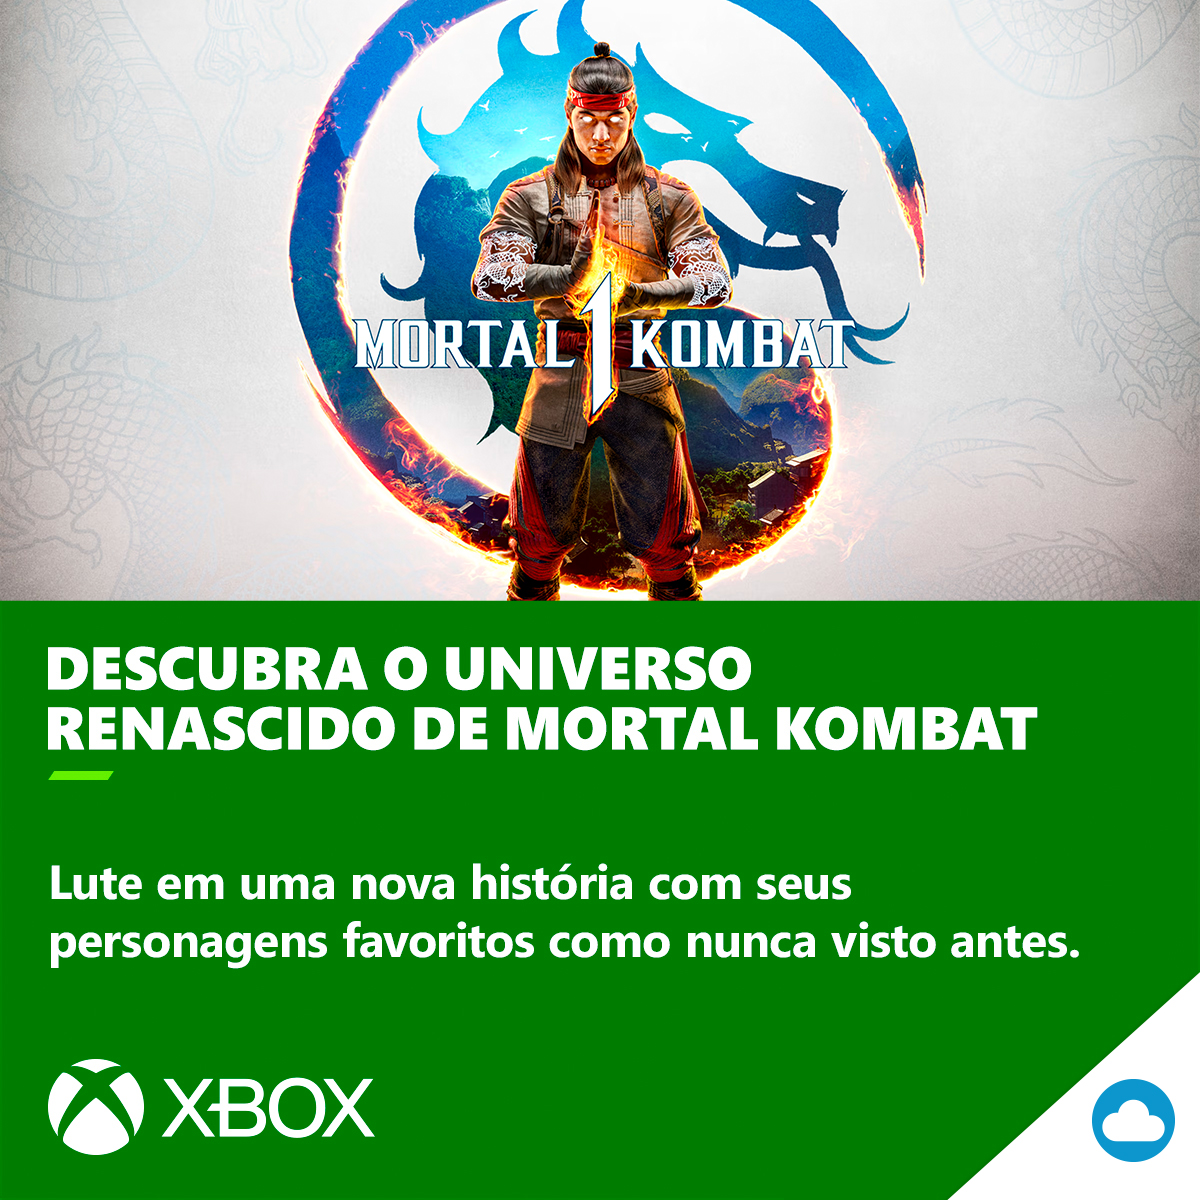 Fique por dentro da nova história dos personagens de Mortal Kombat 1